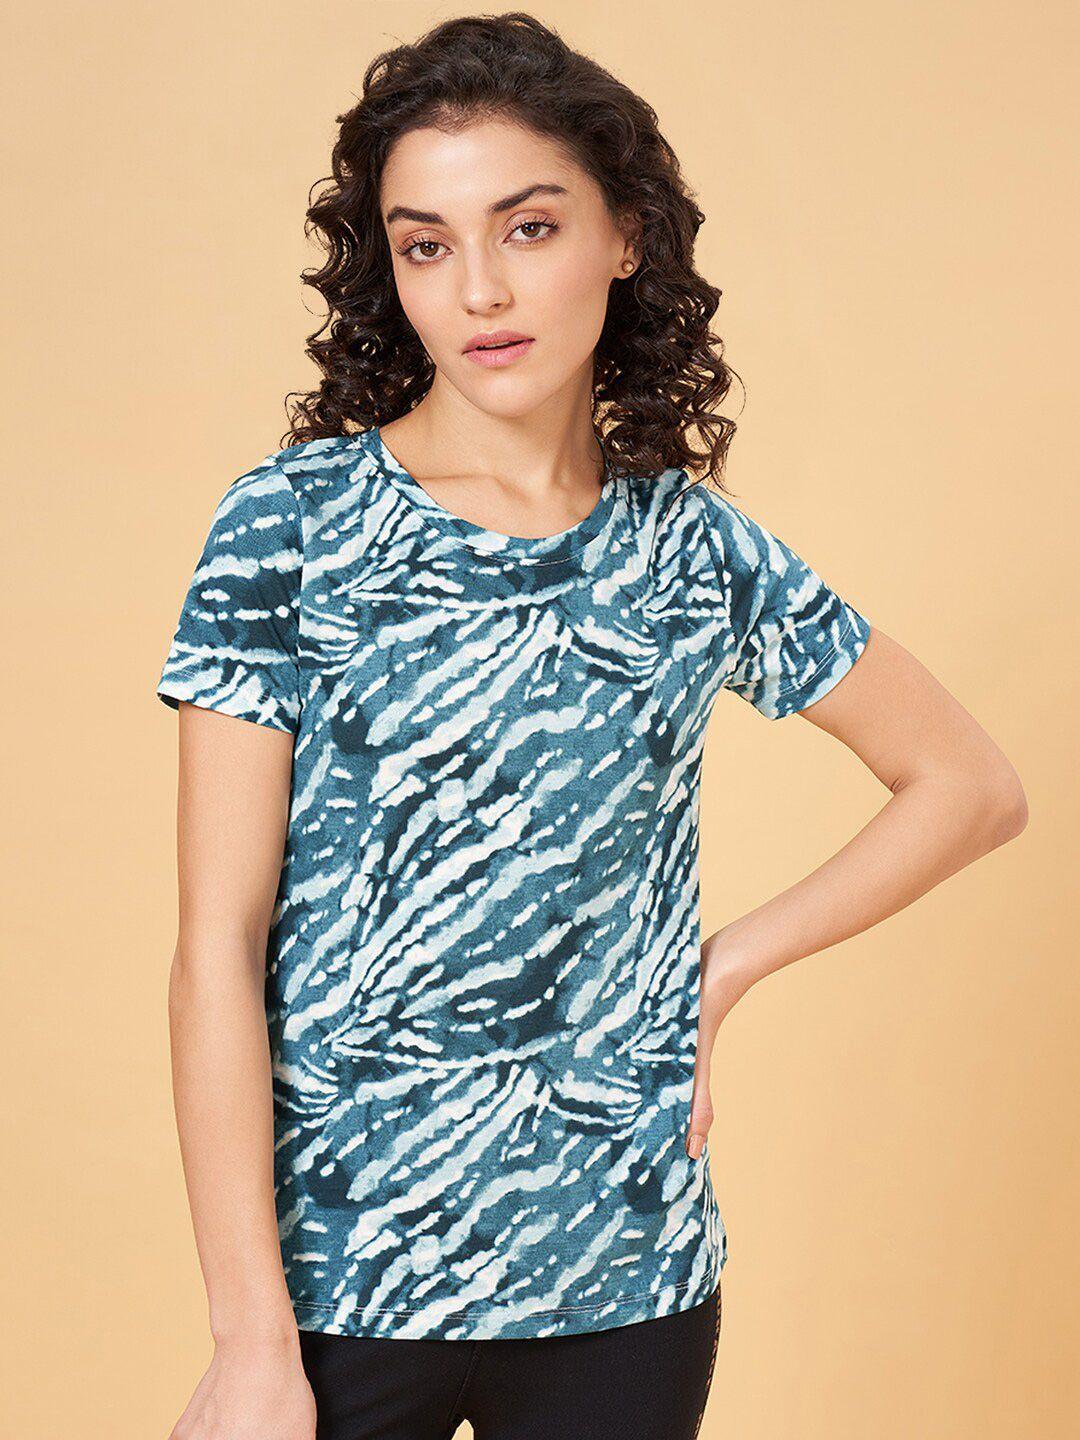 ajile by pantaloons abstract printed cotton t-shirt